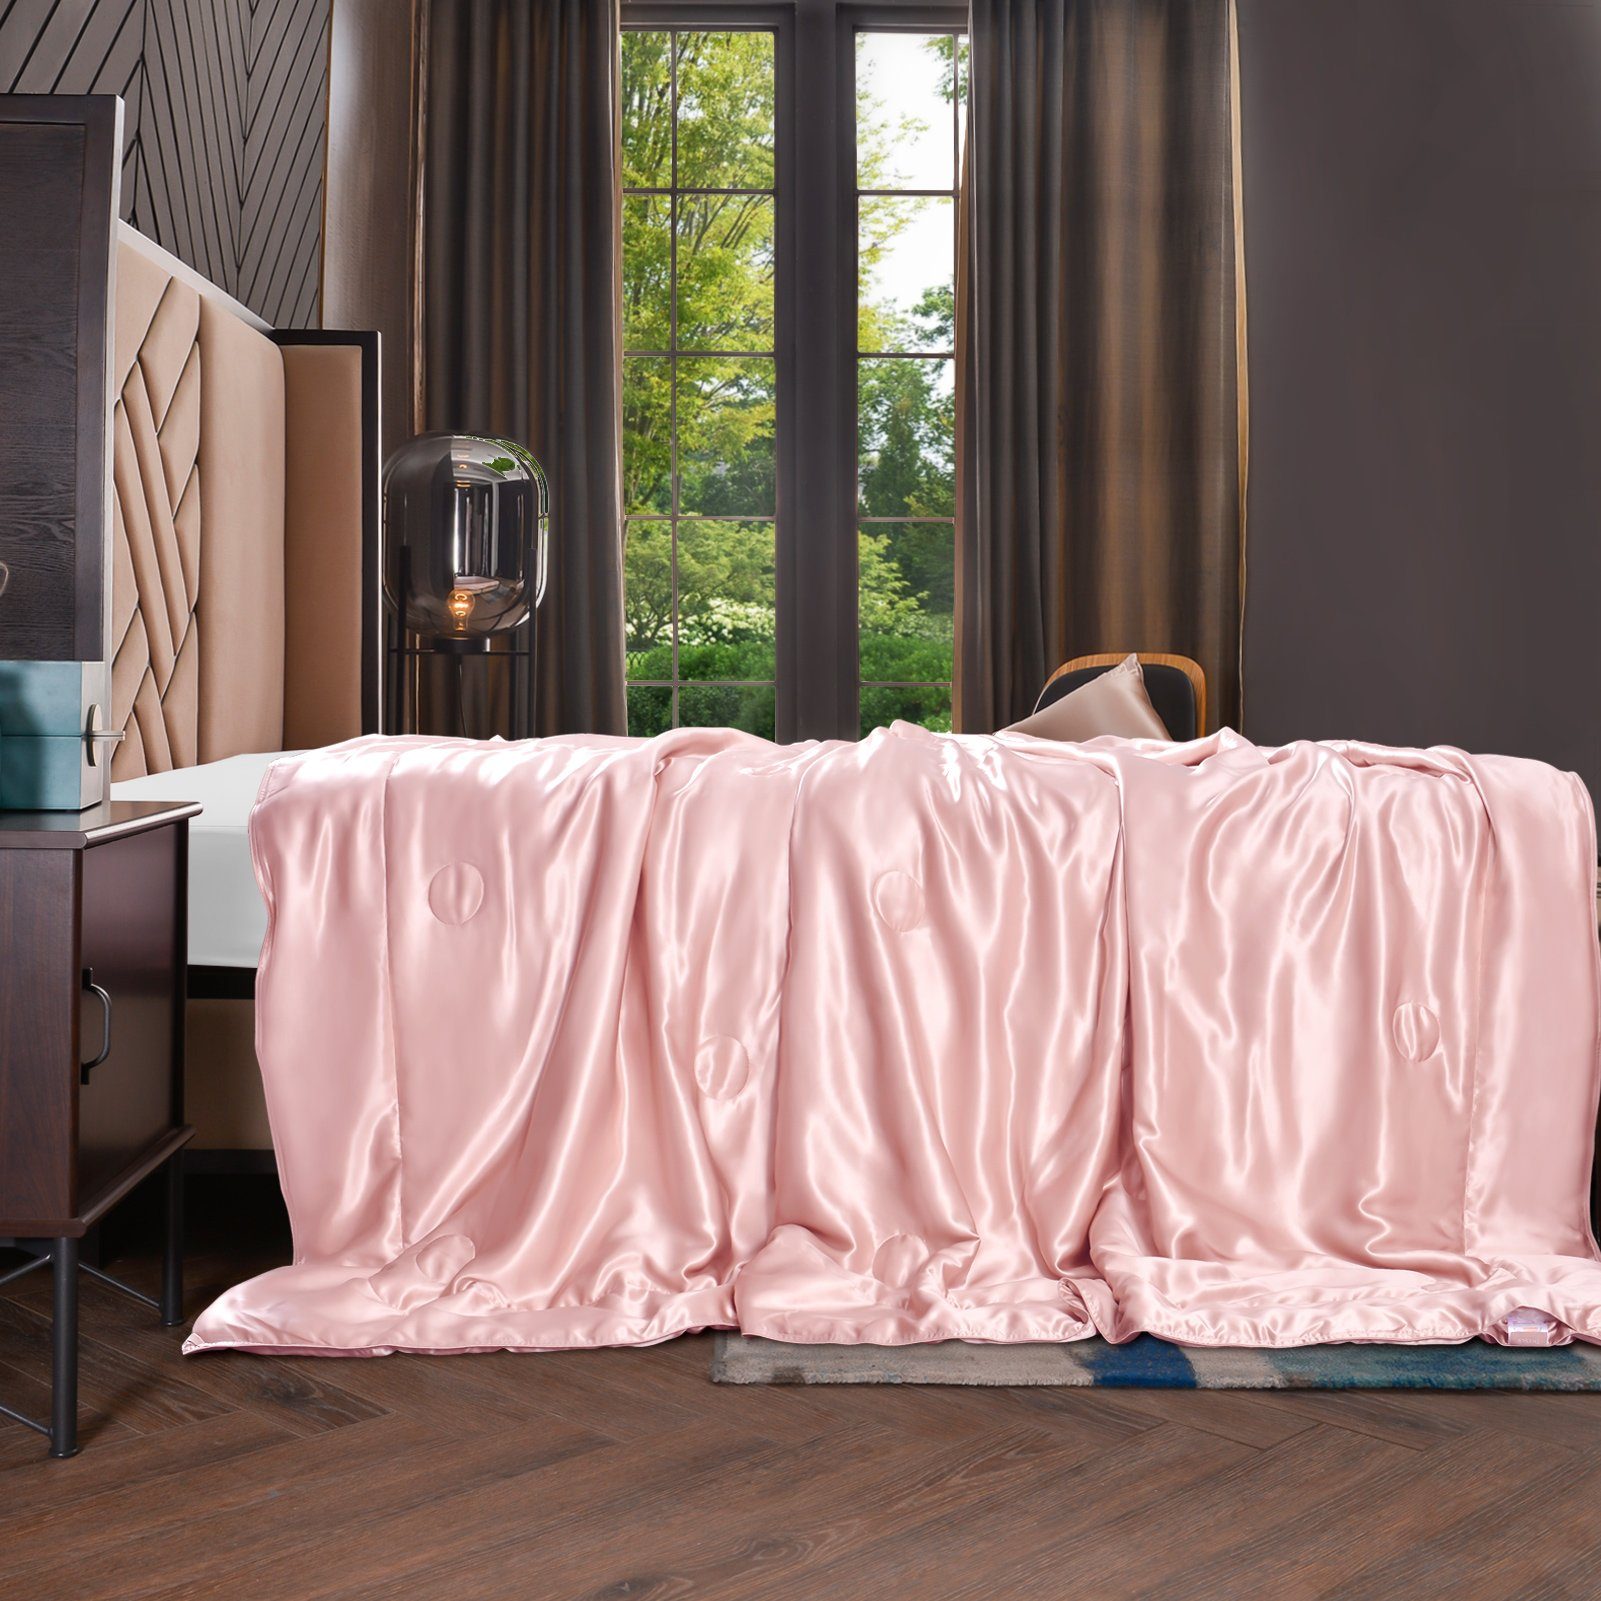 Sommerbettdecke, 135x180 cm, THXSILK, Füllung: 100% Seide, Bezug: 100% Seide, kühlend, leicht, hautfreundlich Rosa